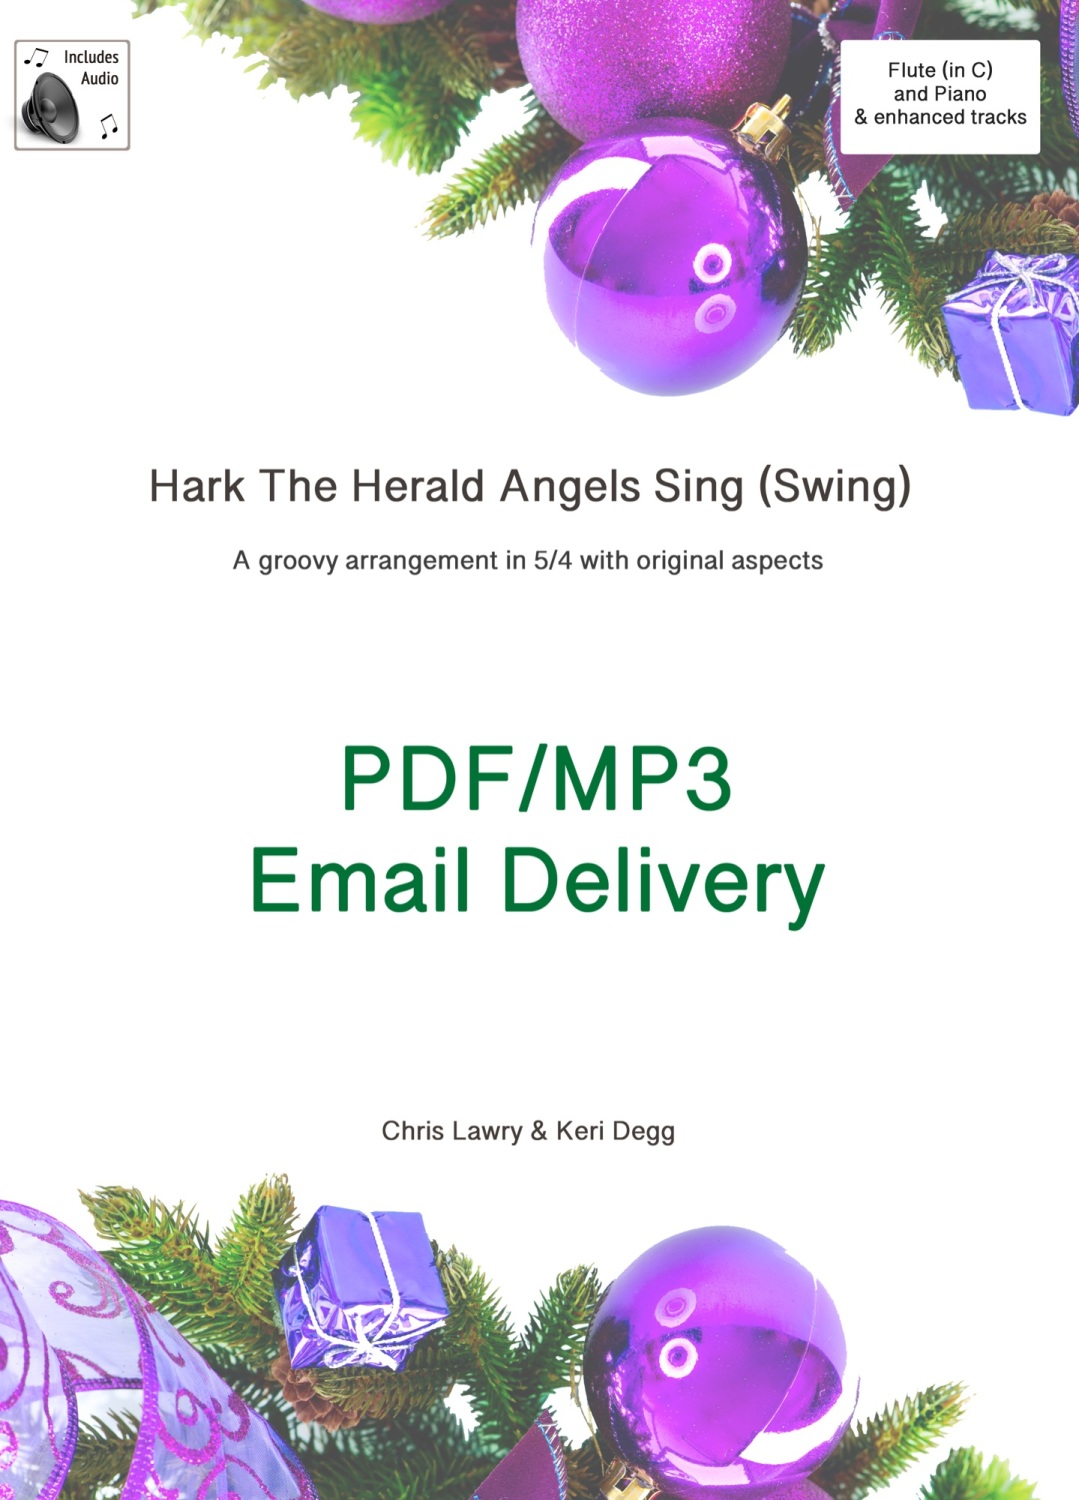 Hark The Herald Angel's Sing (Swing!) Jazz inspired arrangement Flute & Pia